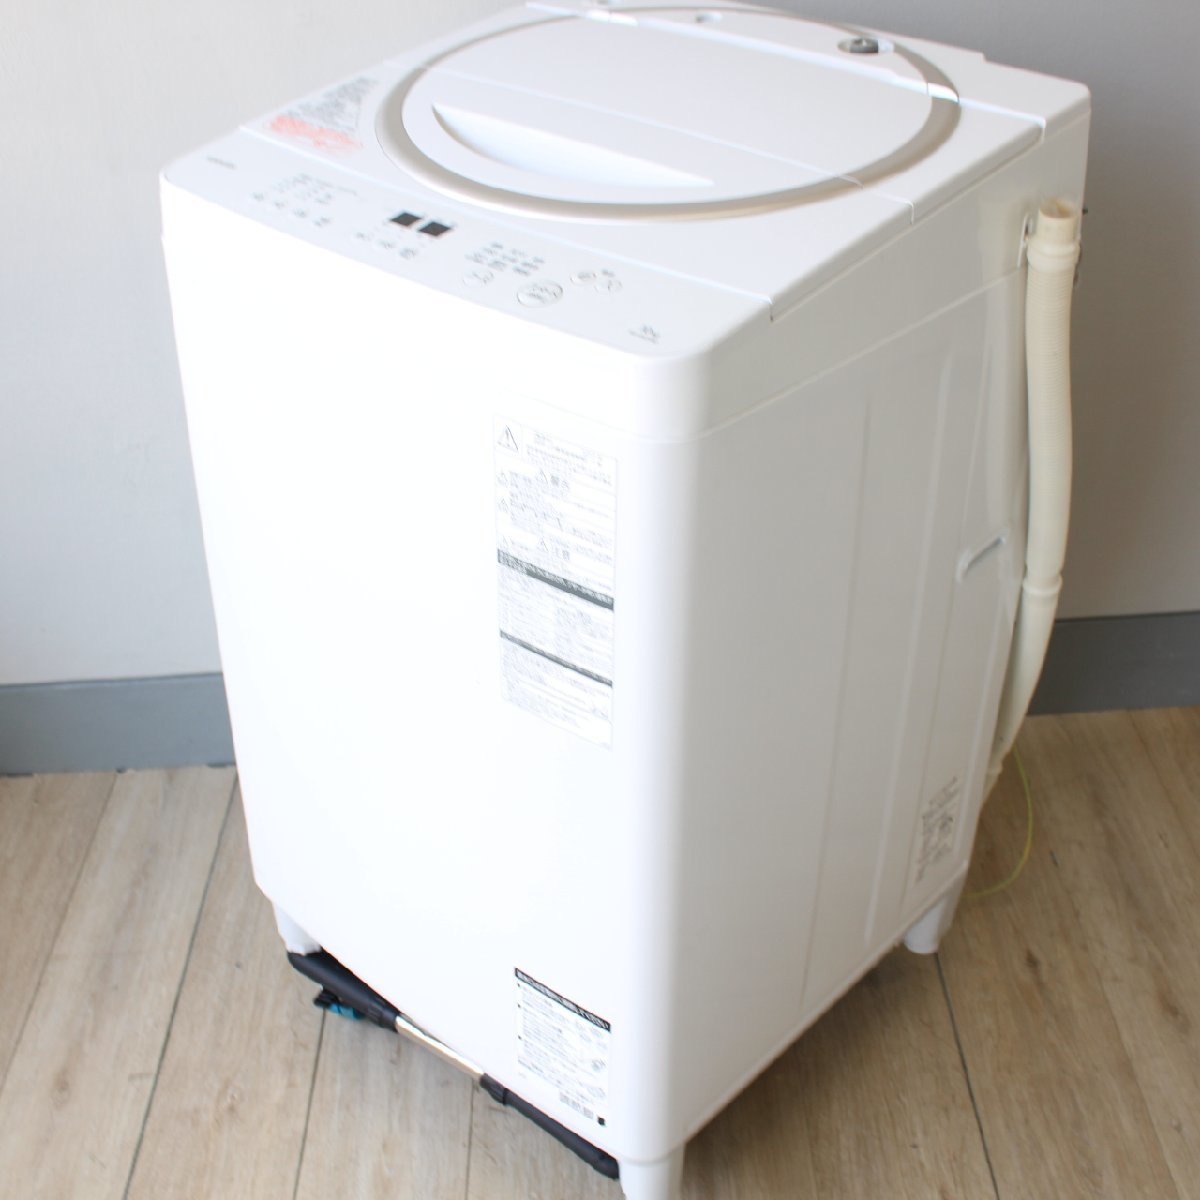 東京都江東区にて 東芝 全自動洗濯機 AW-10SD5 2017年製 を出張買取させて頂きました。